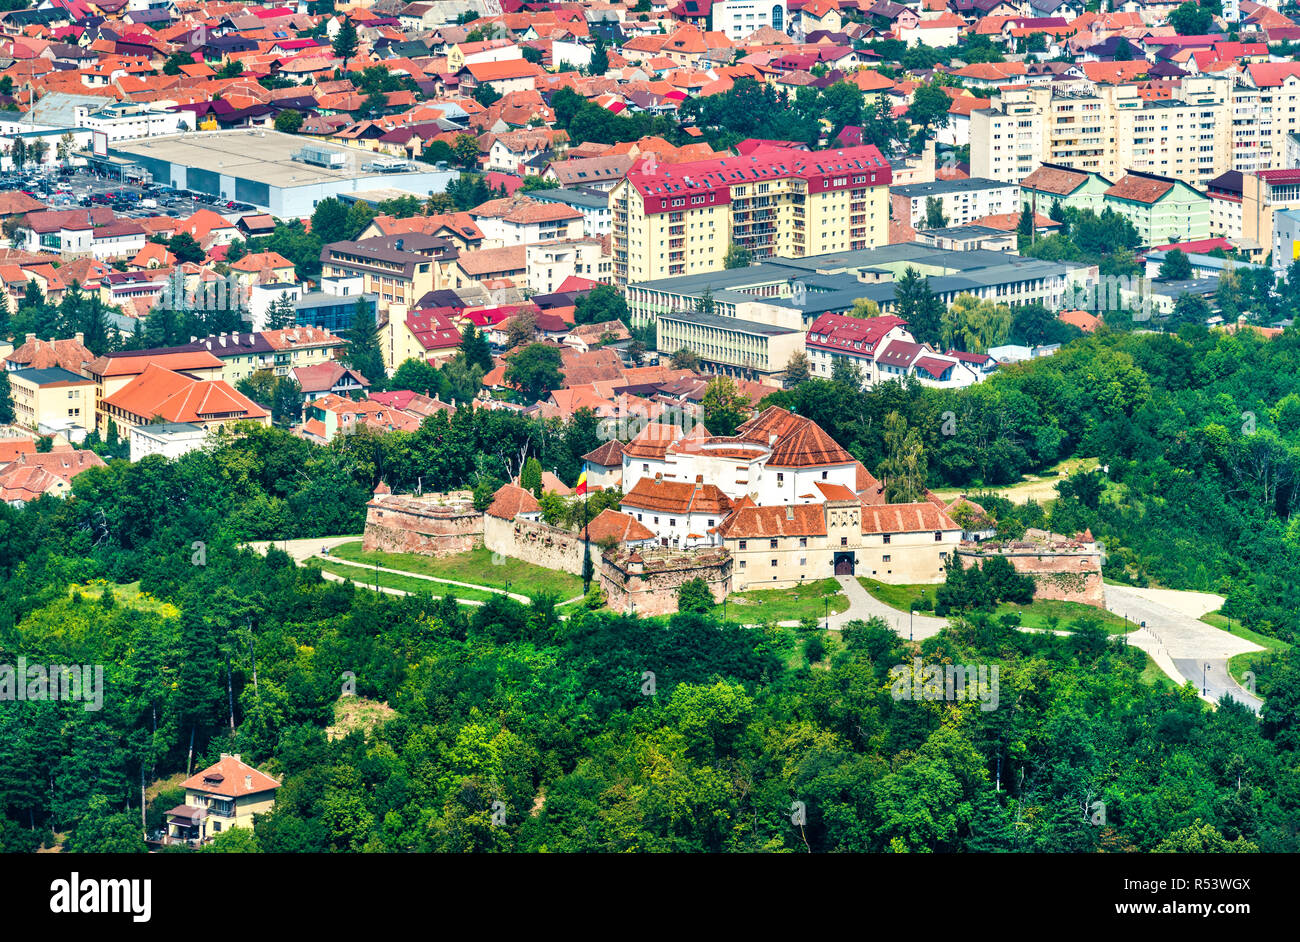 Straja hill fortress in Brasov, Romania Stock Photo